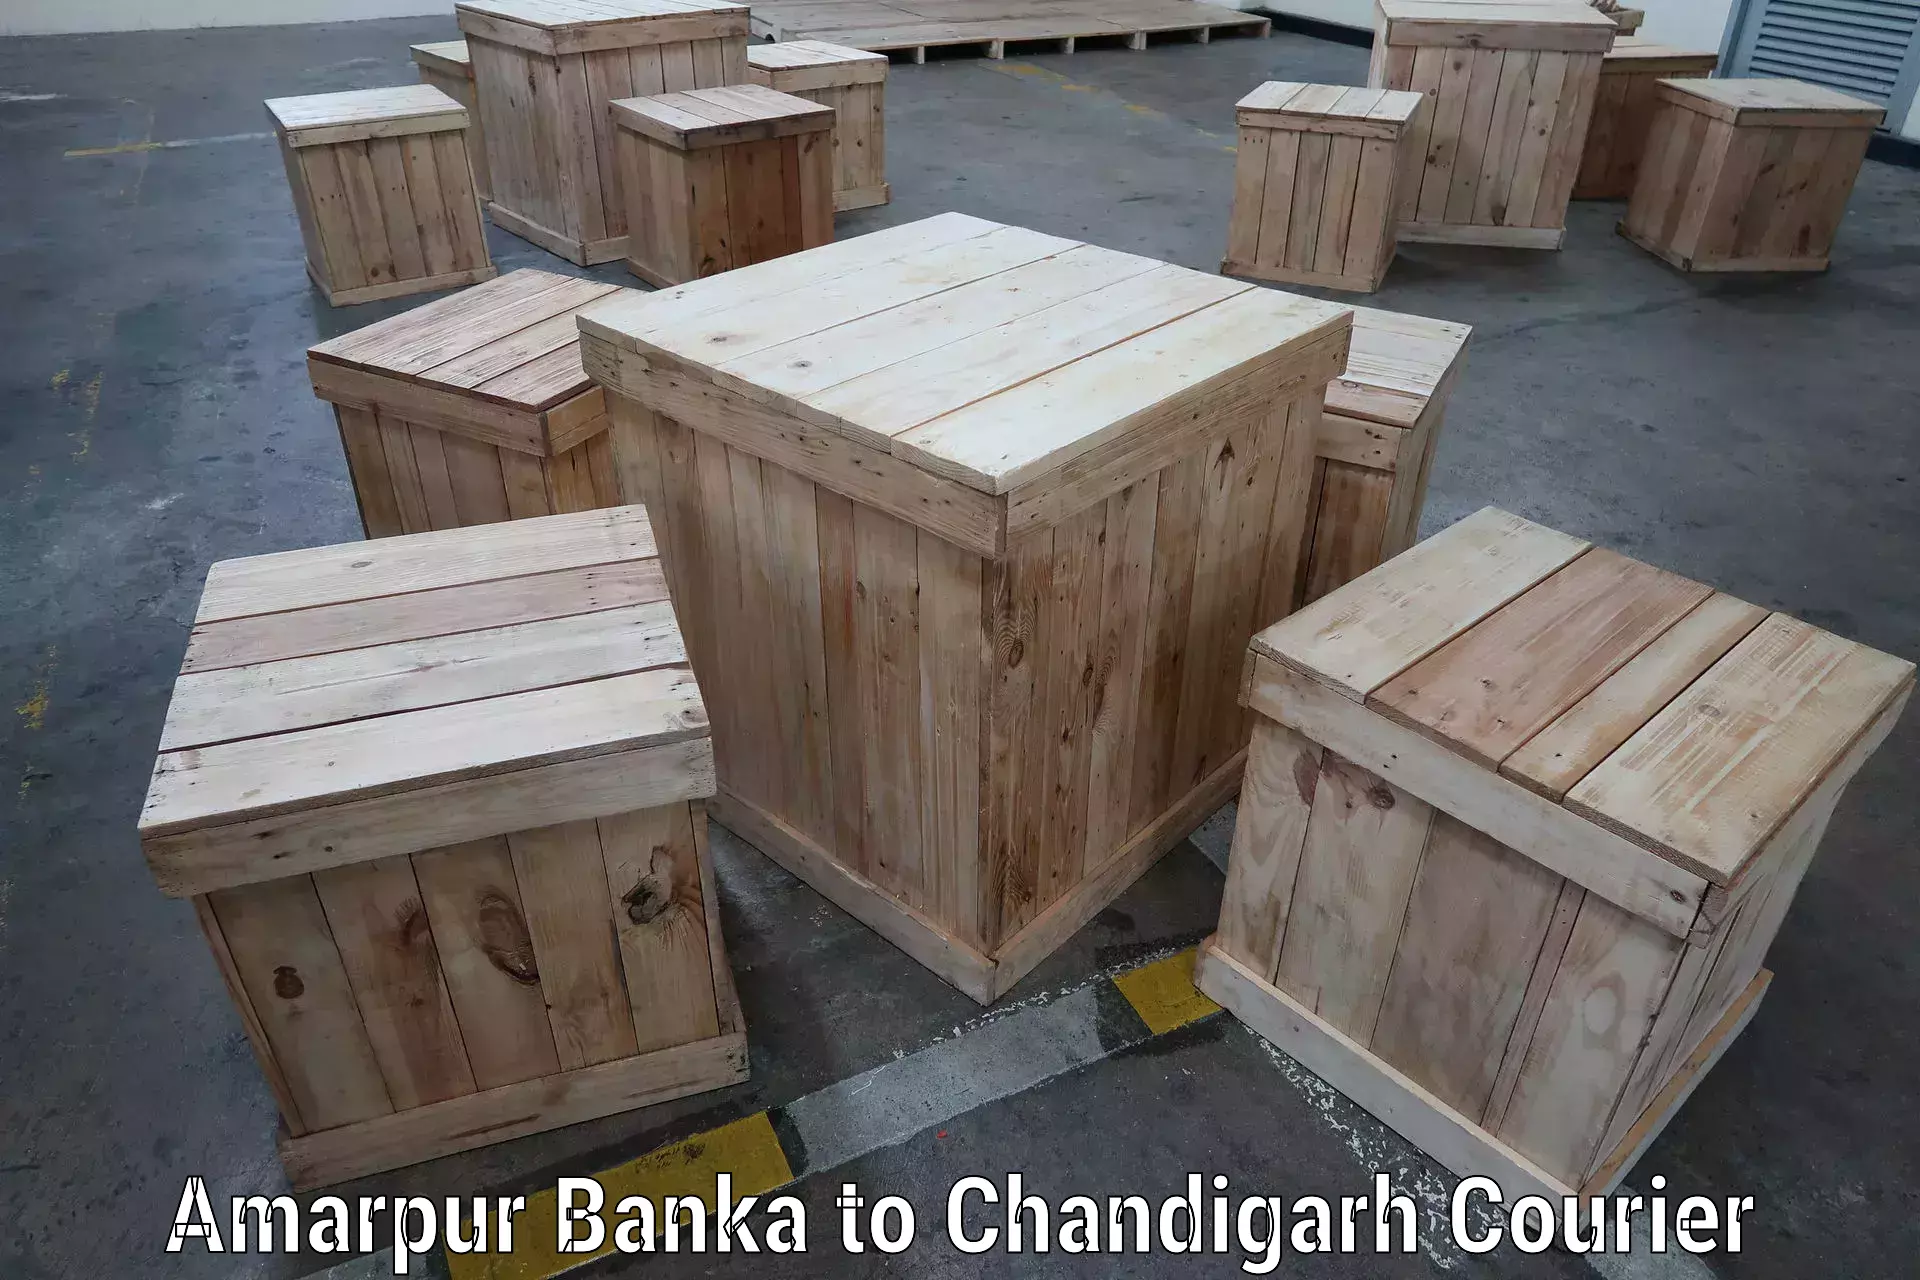 Efficient freight service Amarpur Banka to Chandigarh